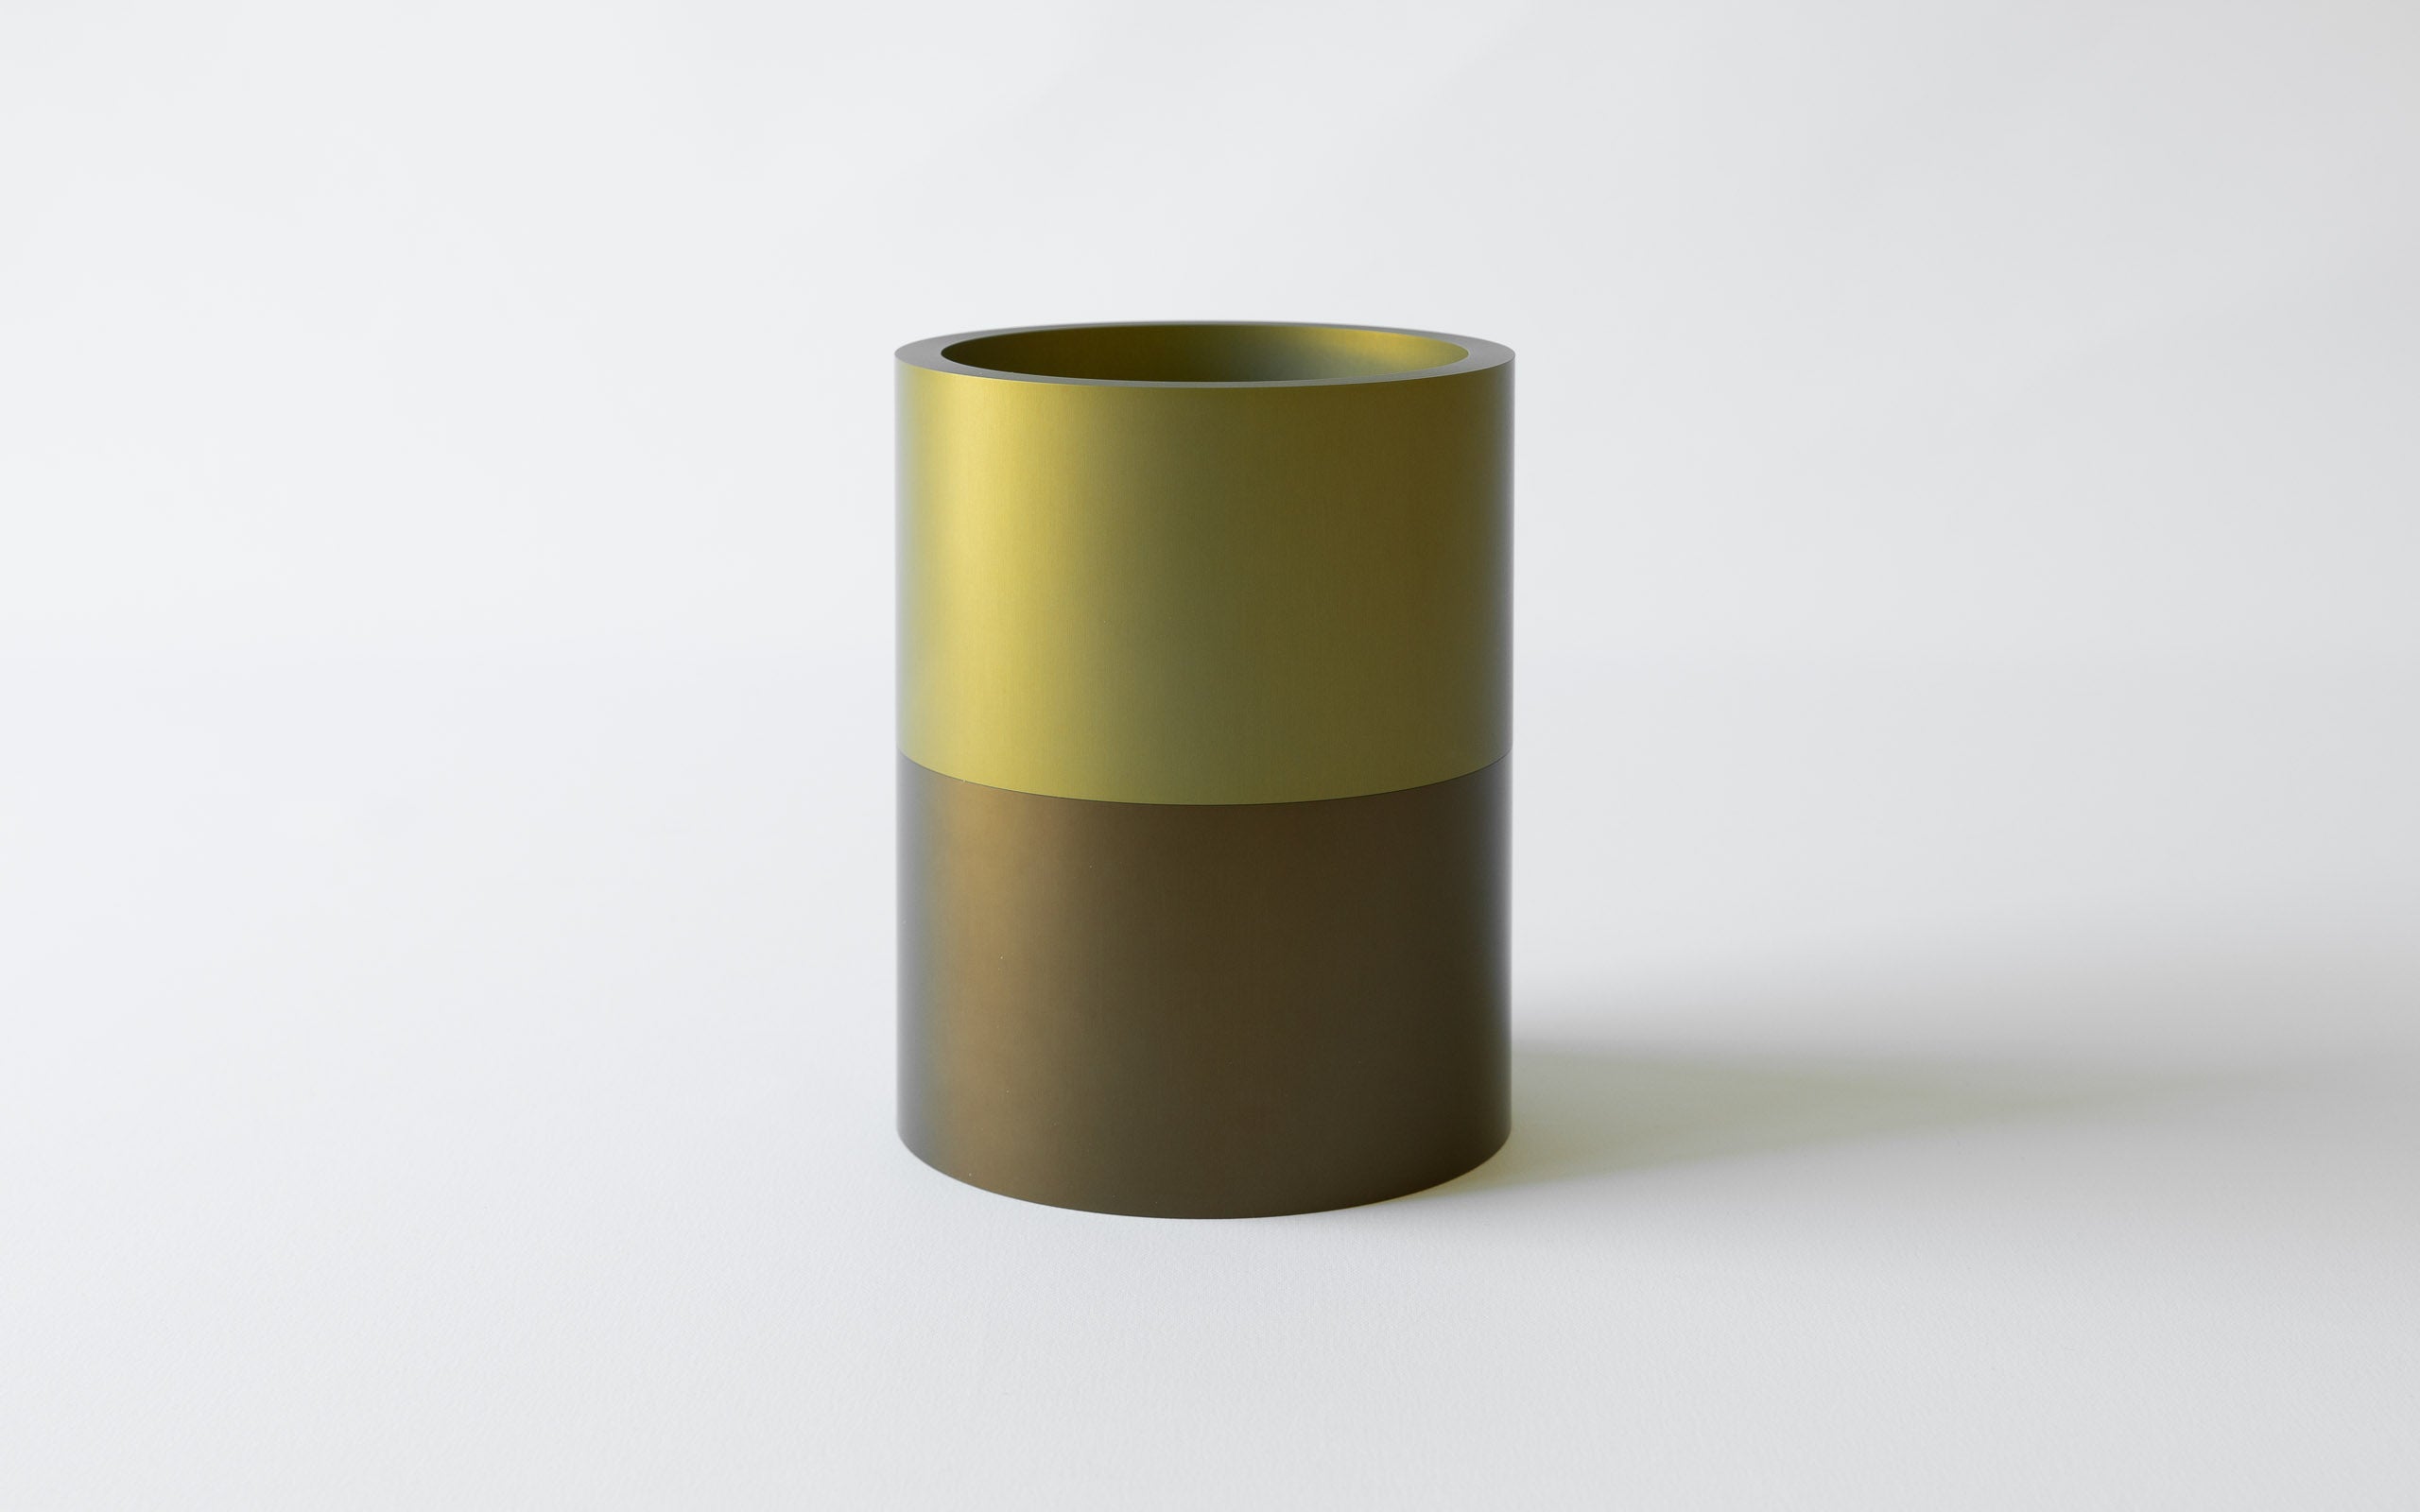 Eloxierte Aluminium Vase in drei Teilen und drei Farben - Bronze, Gelbbronze, Gelb.